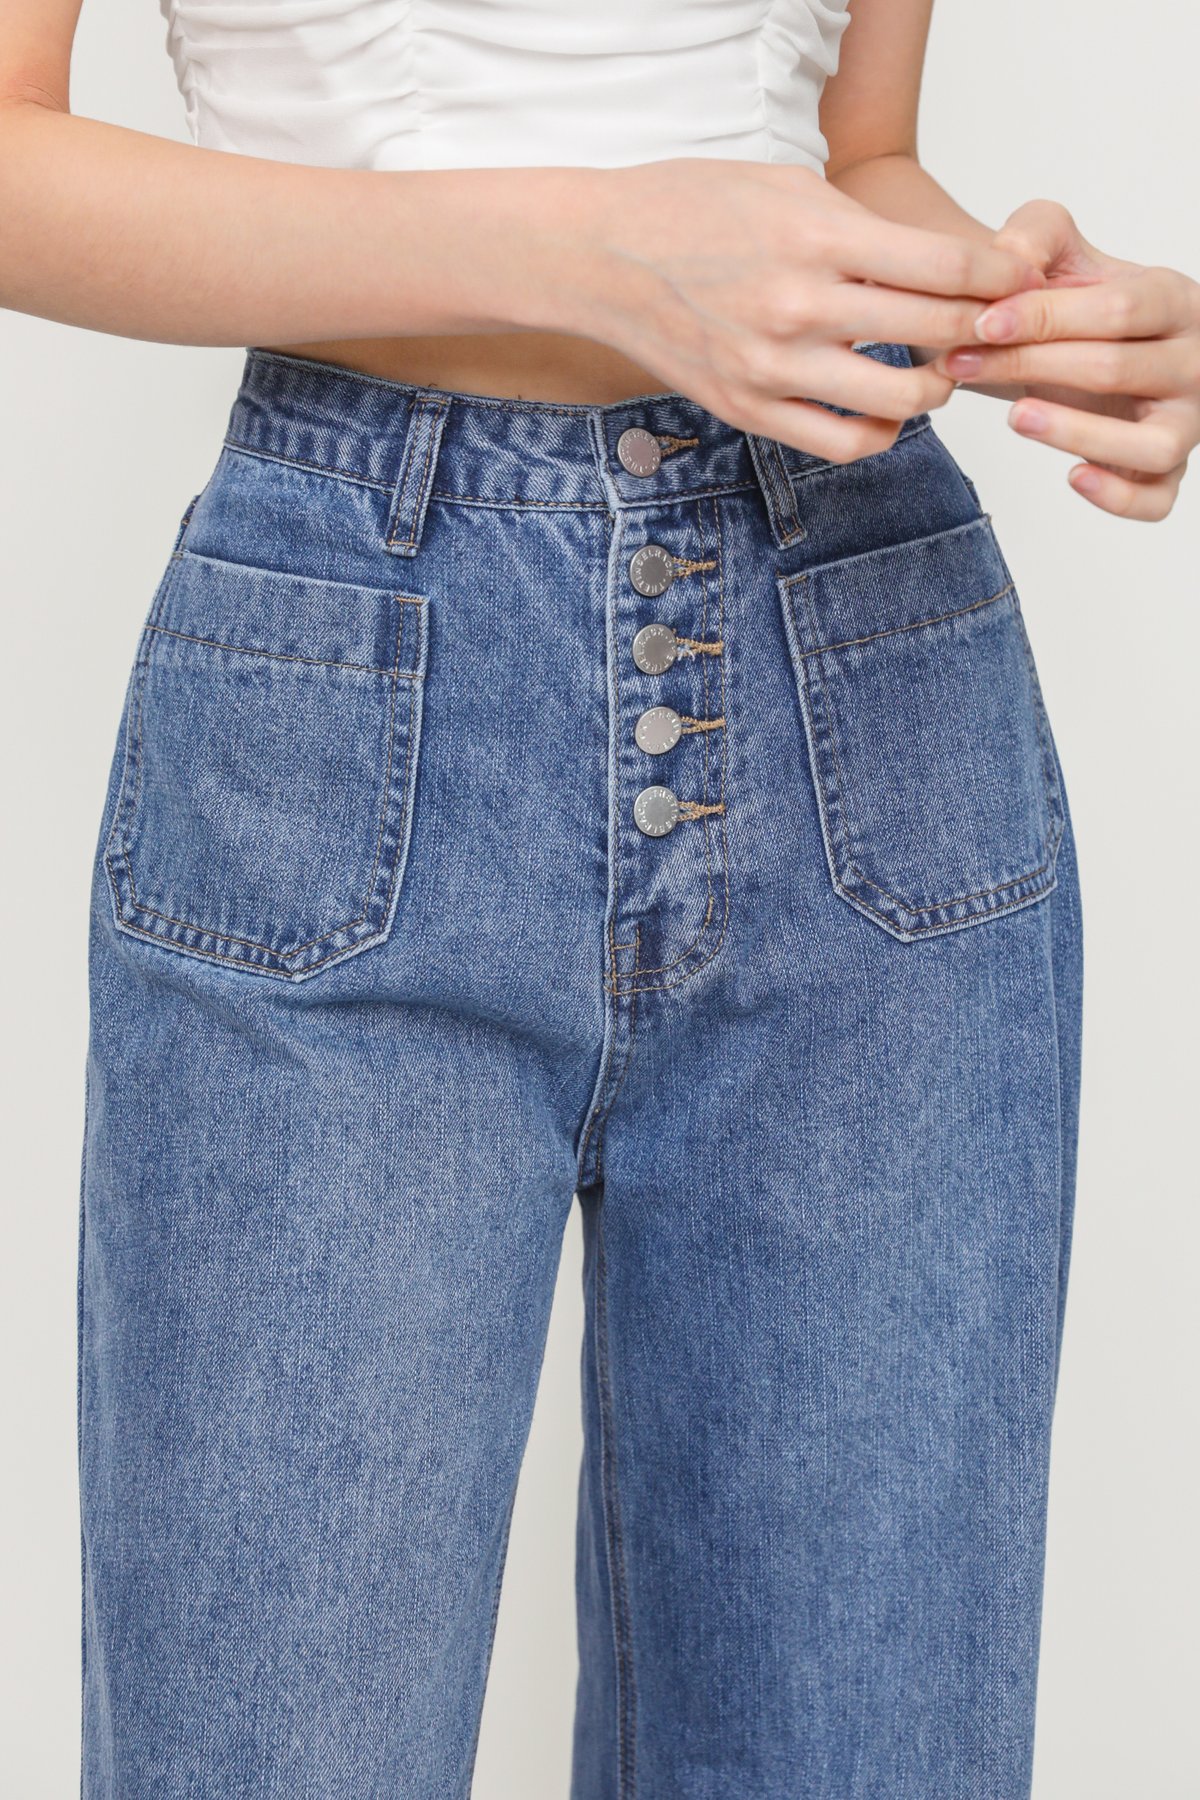 Ingrid Multi Buttons Jeans (Vintage Wash)